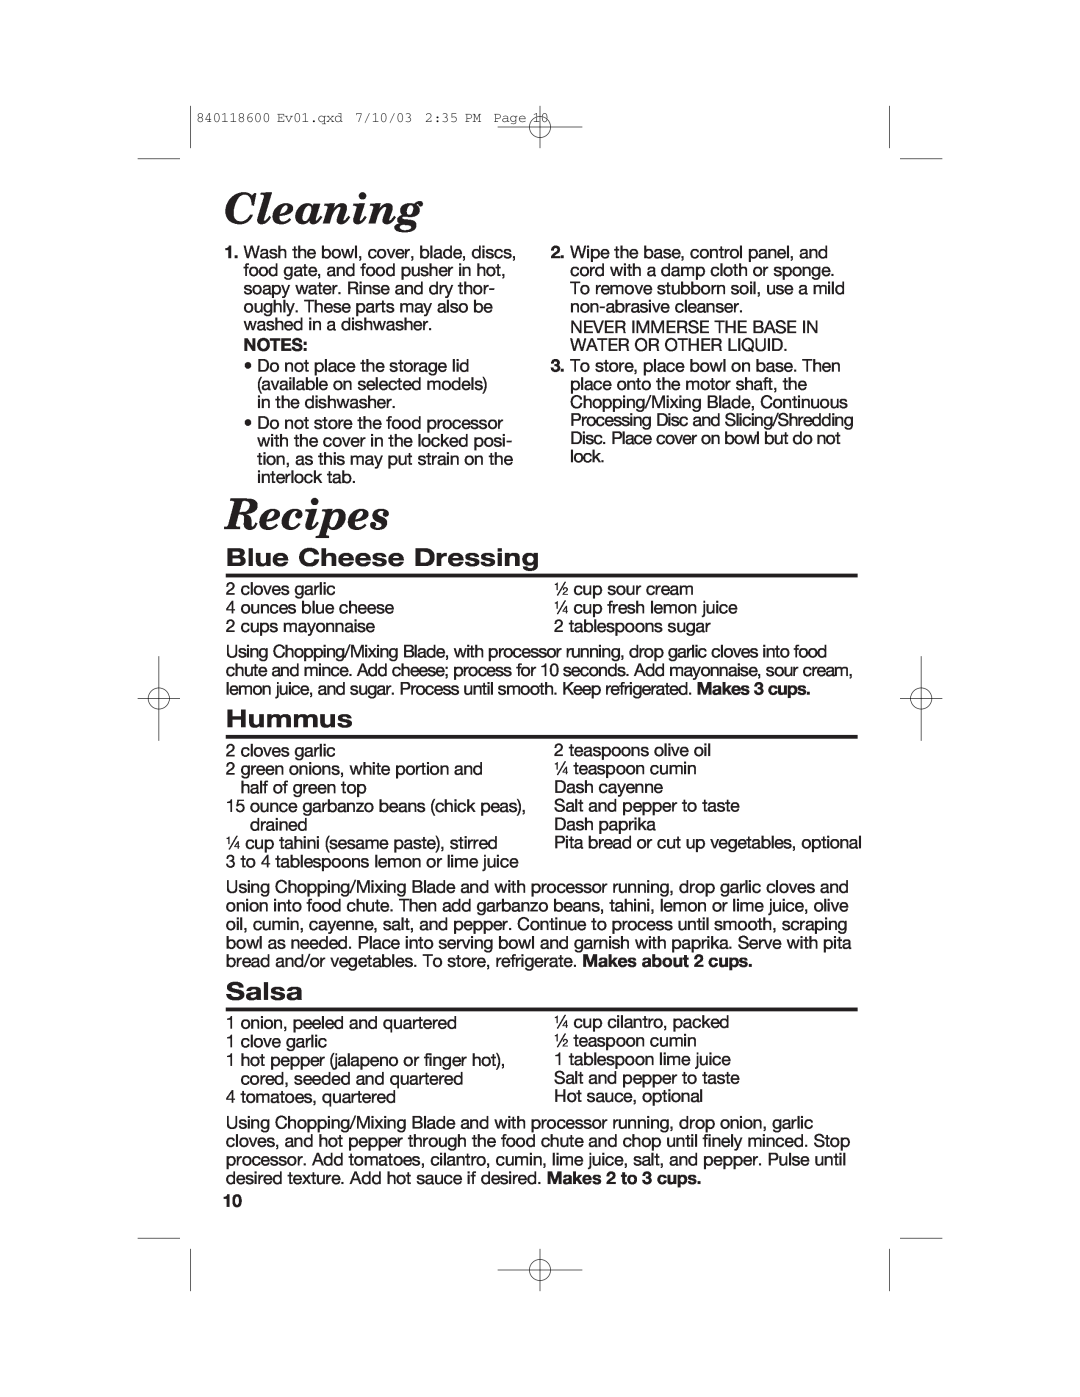 Hamilton Beach 70550RC manual Cleaning, Recipes, Blue Cheese Dressing, Hummus, Salsa 